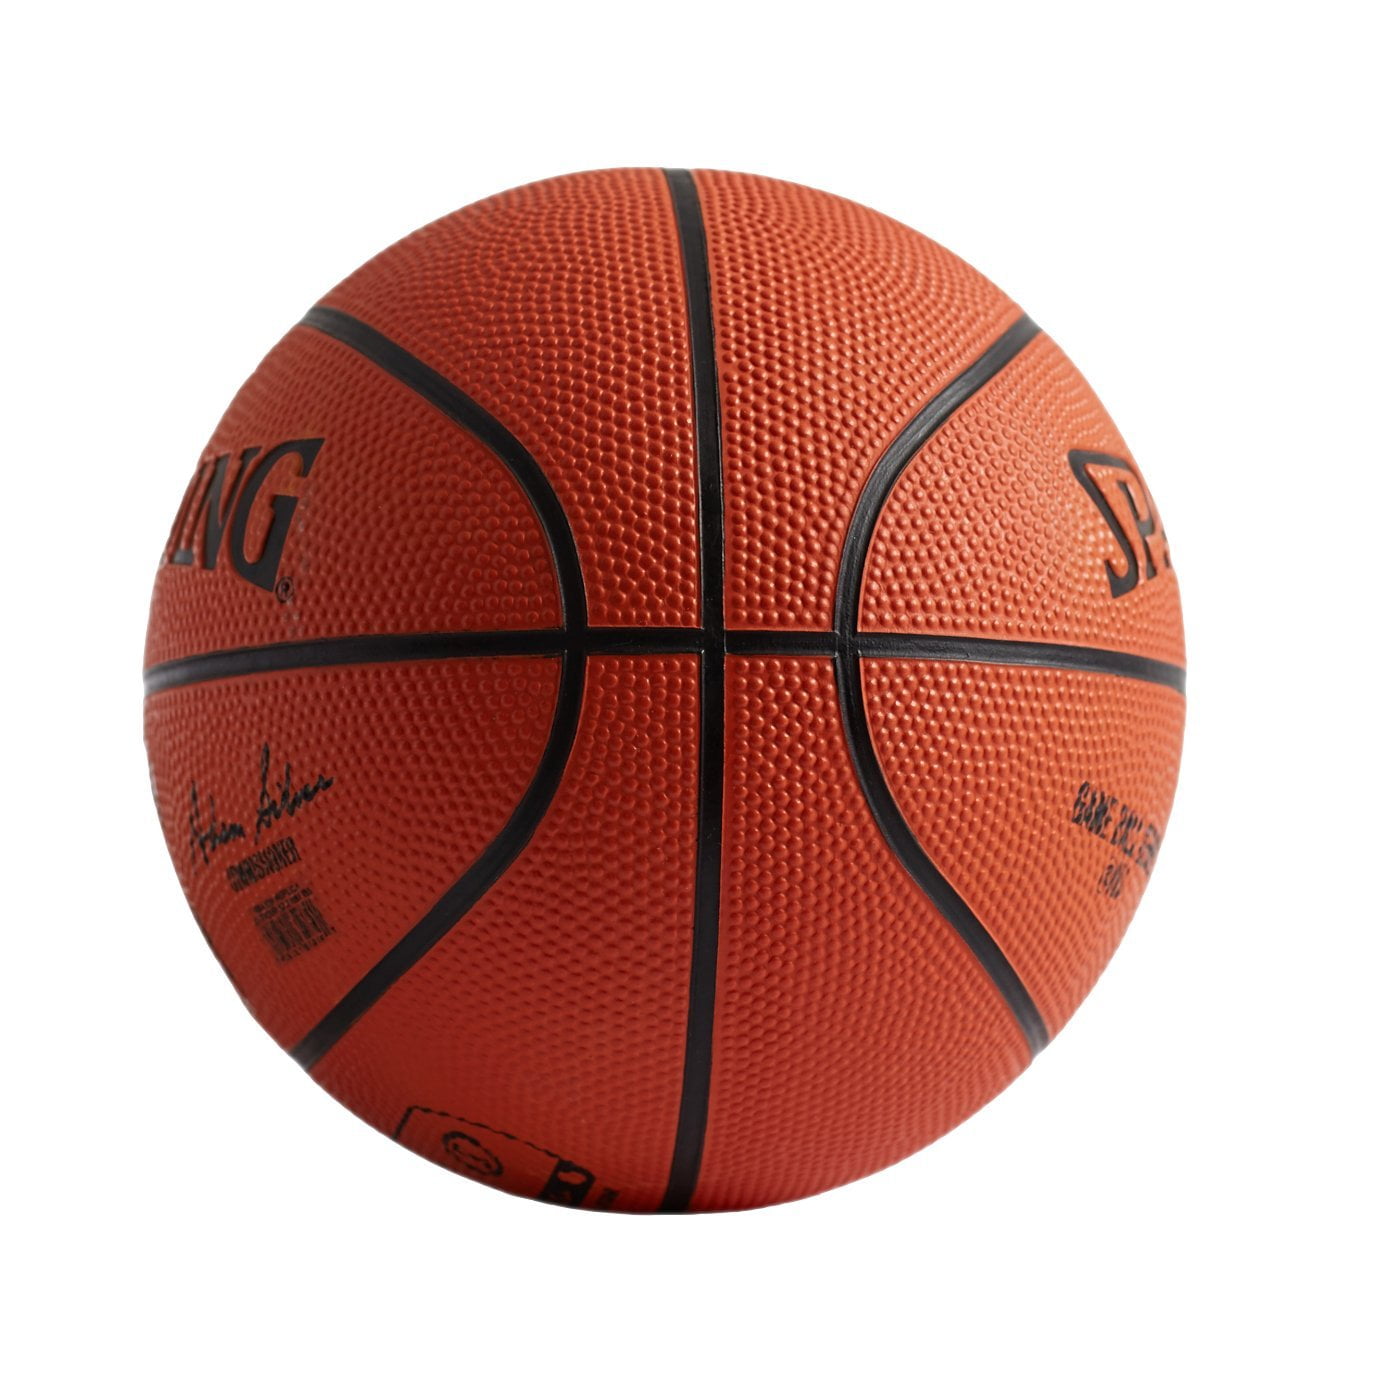 Spalding+NBA+Indoor%2Foutdoor+Replica+Game+Ball+74875 for sale online